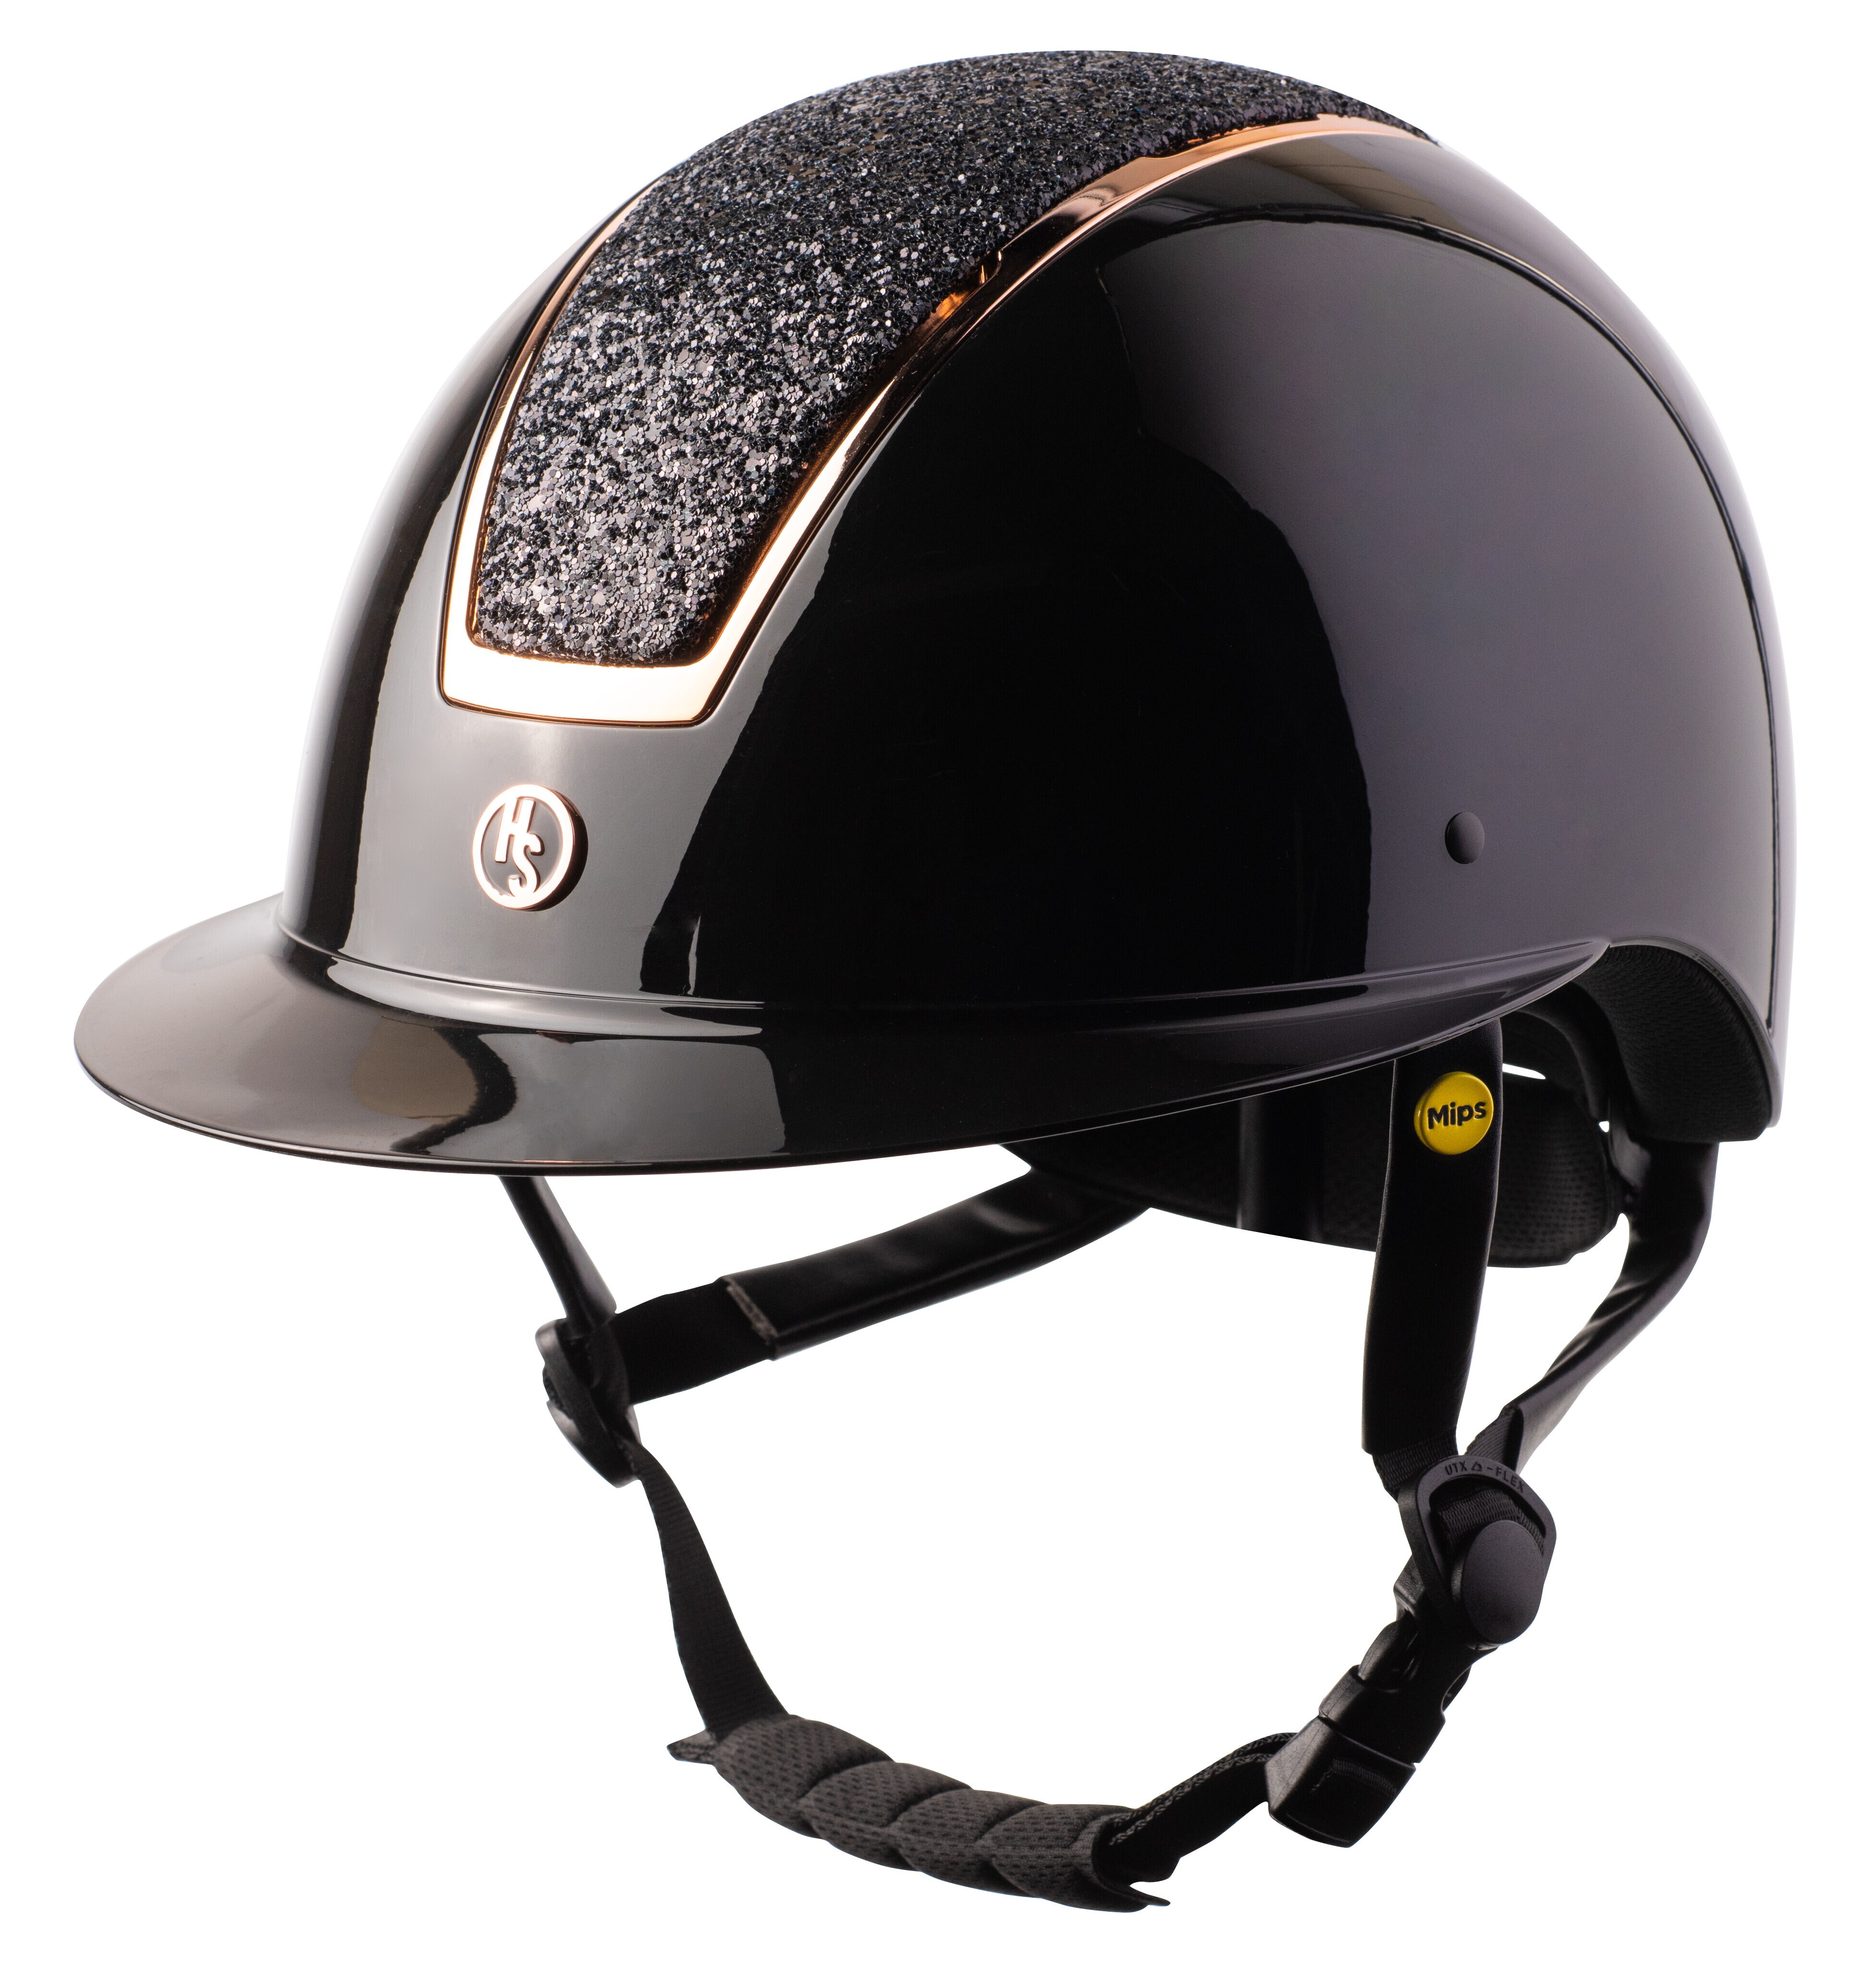 HS MIPS Vision Helmet - Black/Rose Gold